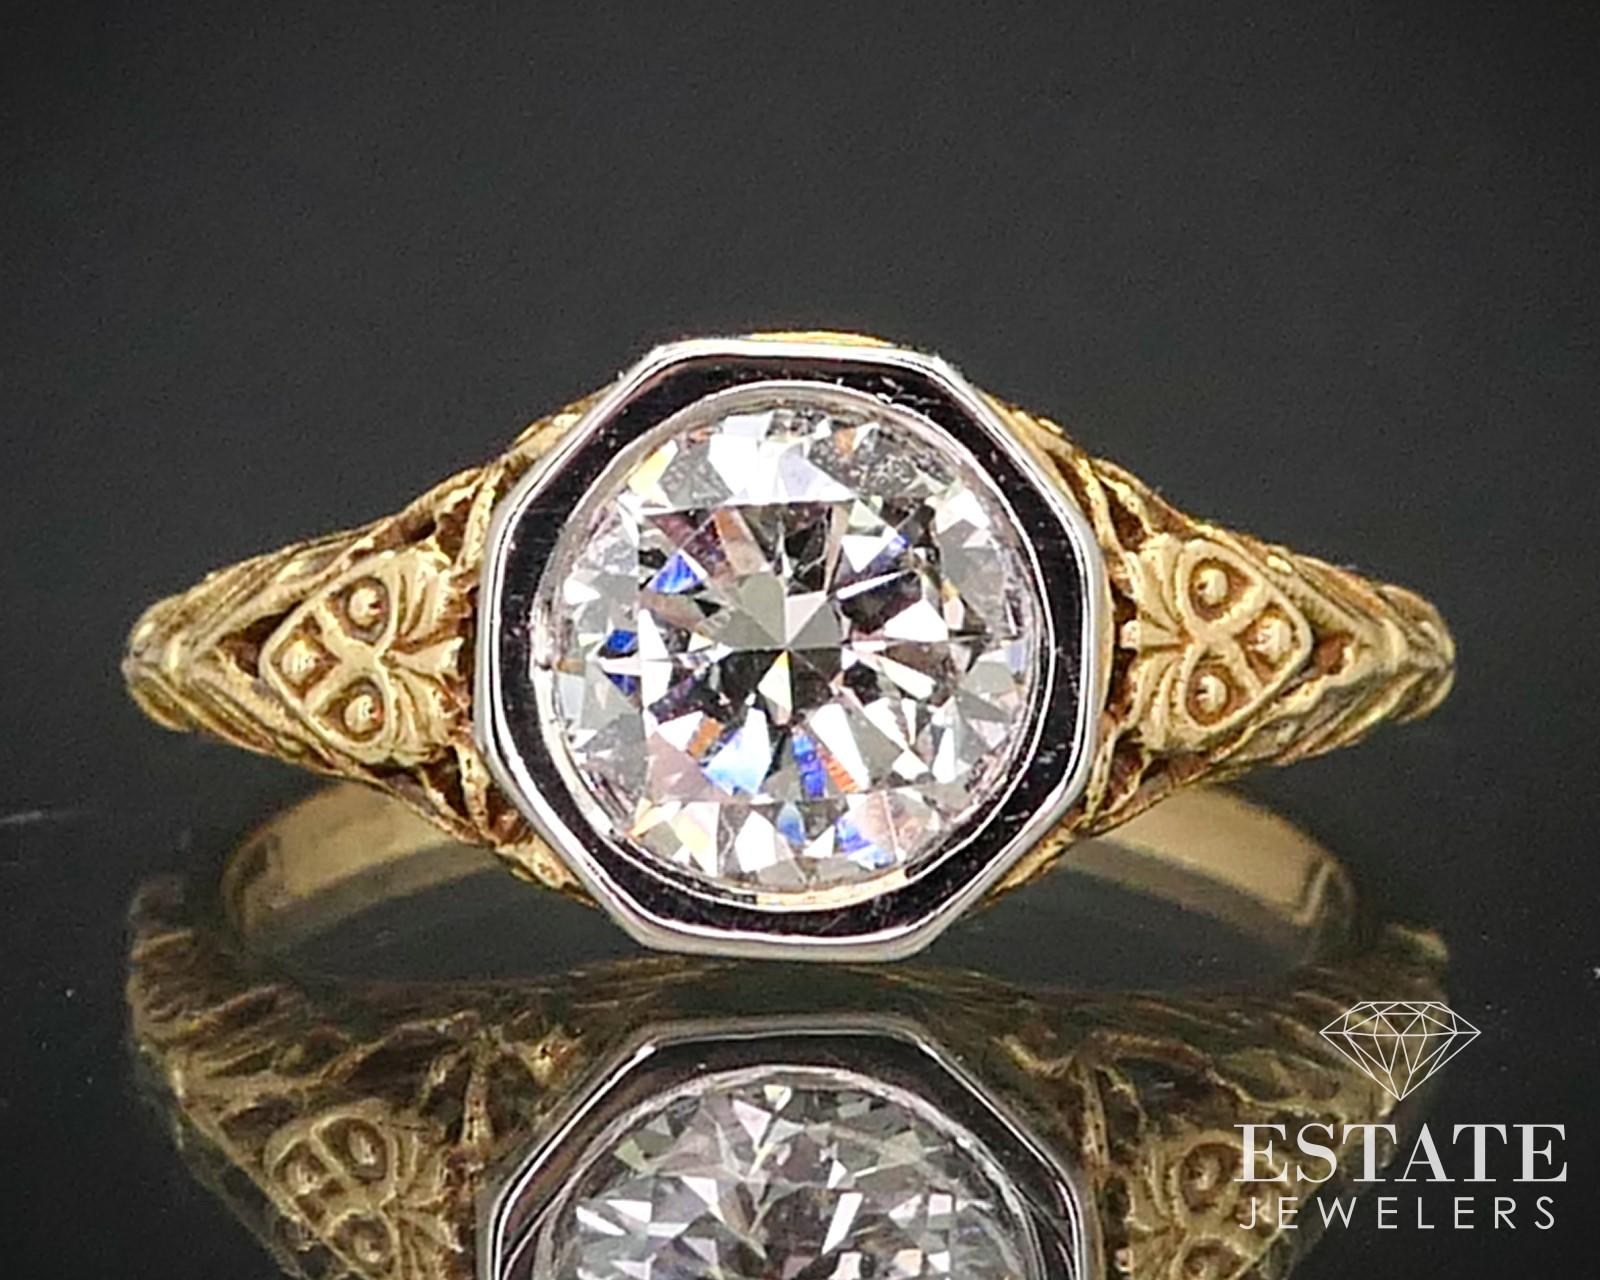 Dieser atemberaubende Ring ist ein Designerstück von Jabel, einem amerikanischen Schmuckdesigner, der sich auf Schmuck im antiken Stil spezialisiert hat. Dieser gestanzte Ring ist aus 18 Karat Gelbgold gegossen und mit einem Kopf aus 18 Karat